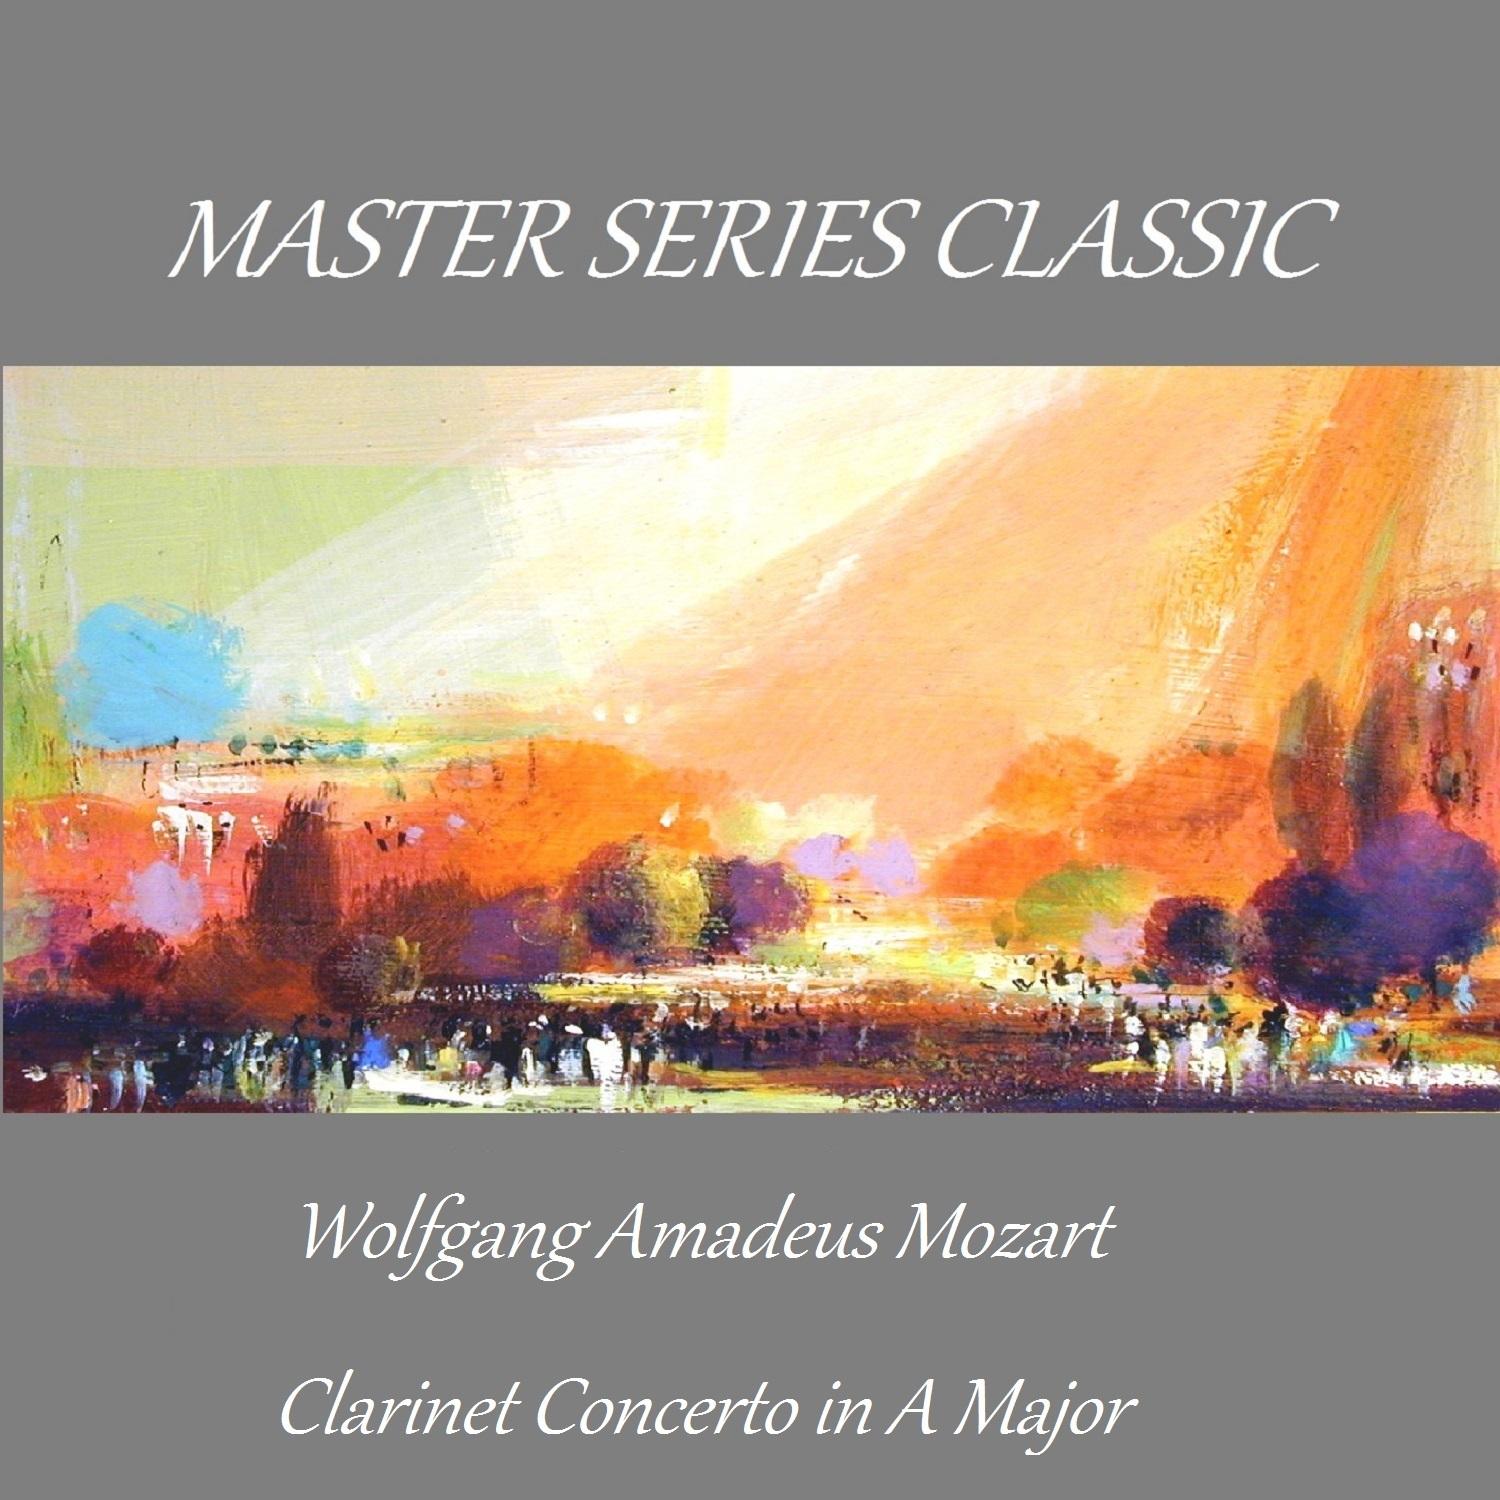 Clarinet Concerto in A Major, K. 622: III. Rondo. Allegro